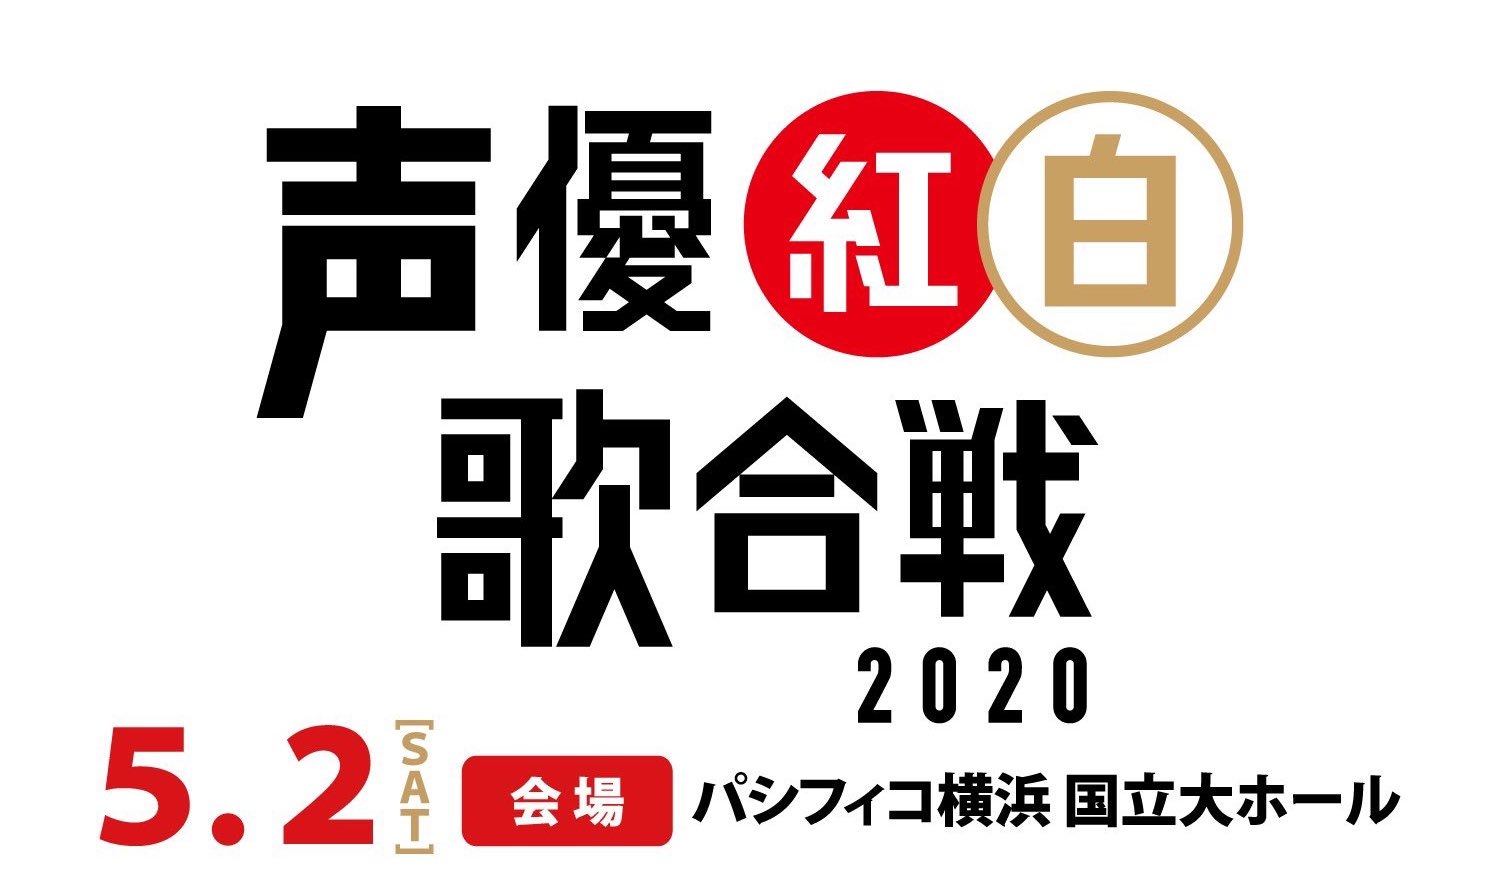 声優紅白歌合戦2020 in パシフィコ横浜 5月2日開催!